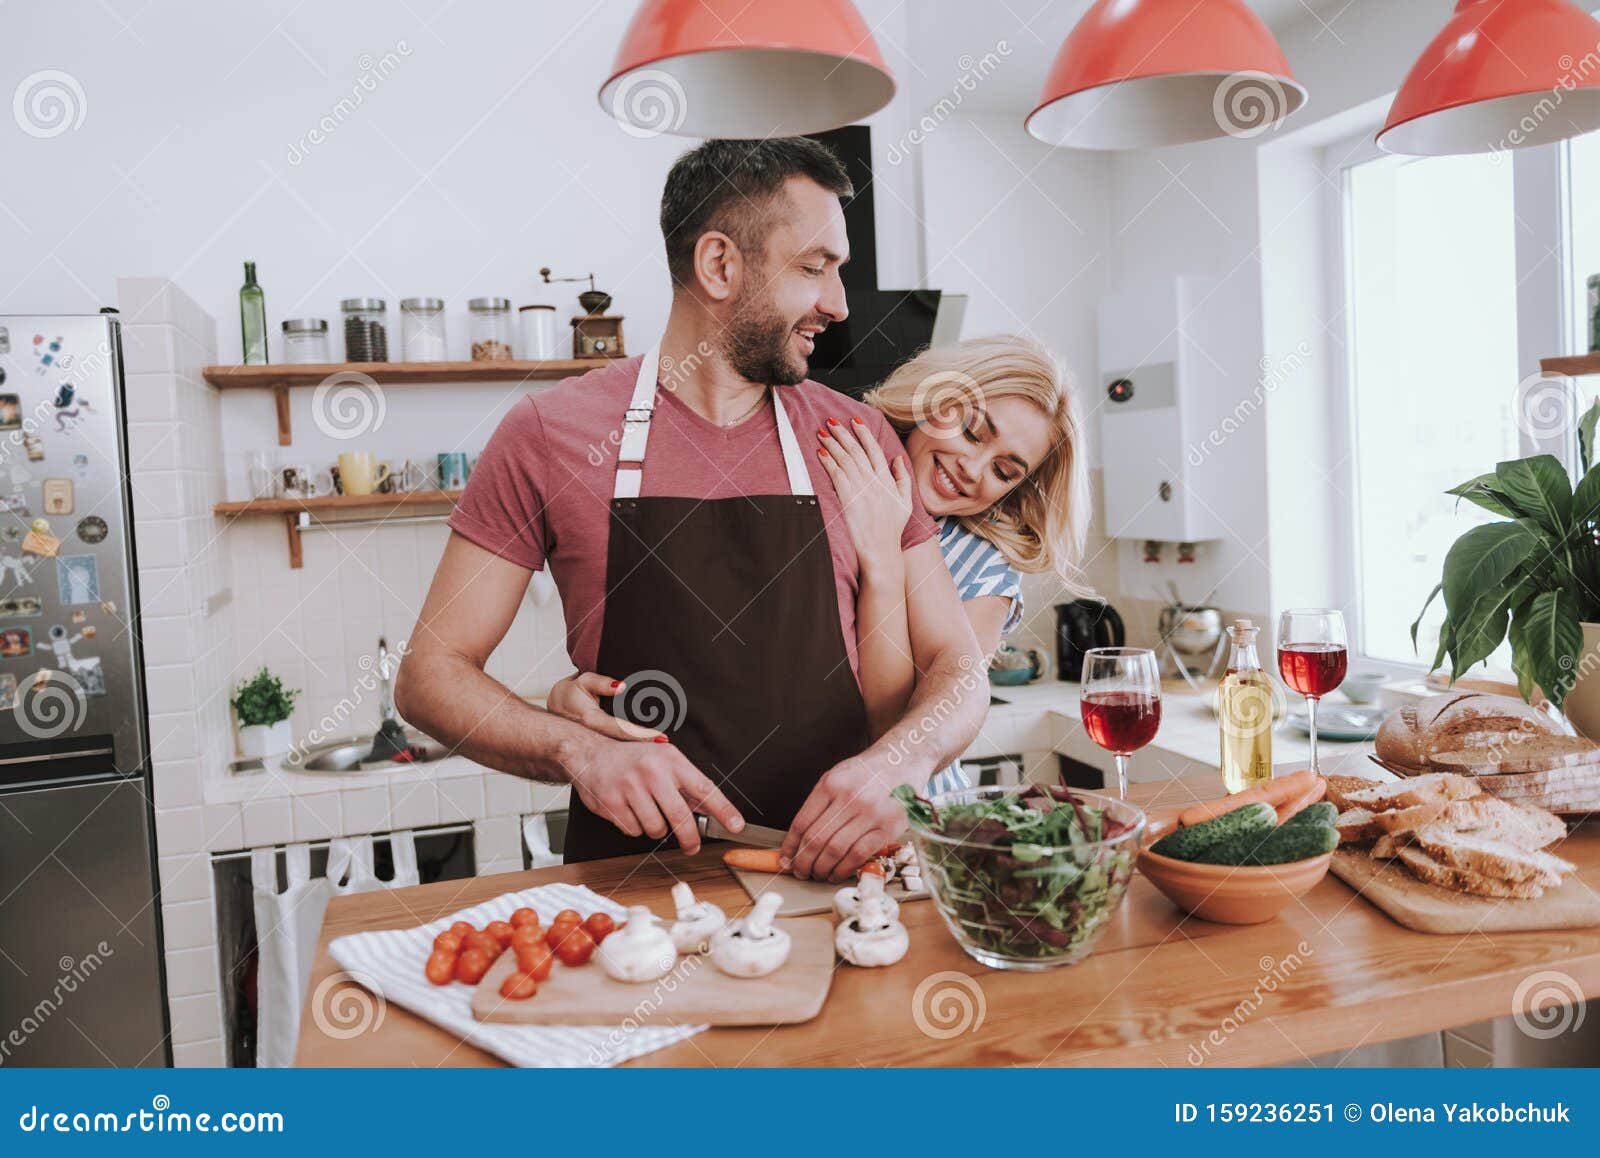 Сидим с мужем на кухне. Муж готовит ужин. Муж обнимает жену на кухне. Мужчина готовит женщина обнимает. Мужчина готовит на кухне женщина обнимает.